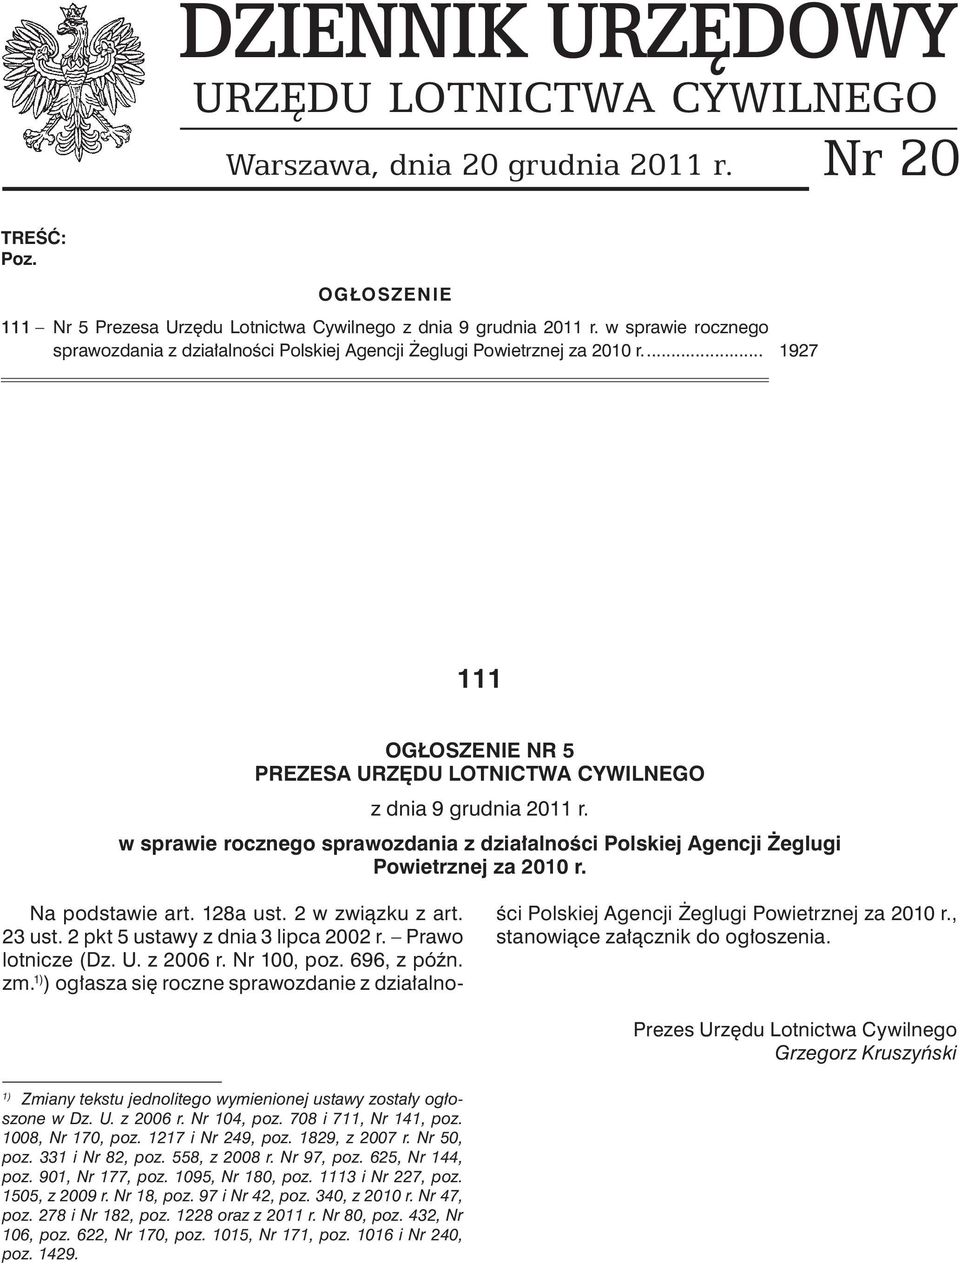 w sprawie rocznego sprawozdania z działalności Polskiej Agencji Żeglugi Powietrznej za 2010 r. Na podstawie art. 128a ust. 2 w związku z art. 23 ust. 2 pkt 5 ustawy z dnia 3 lipca 2002 r.